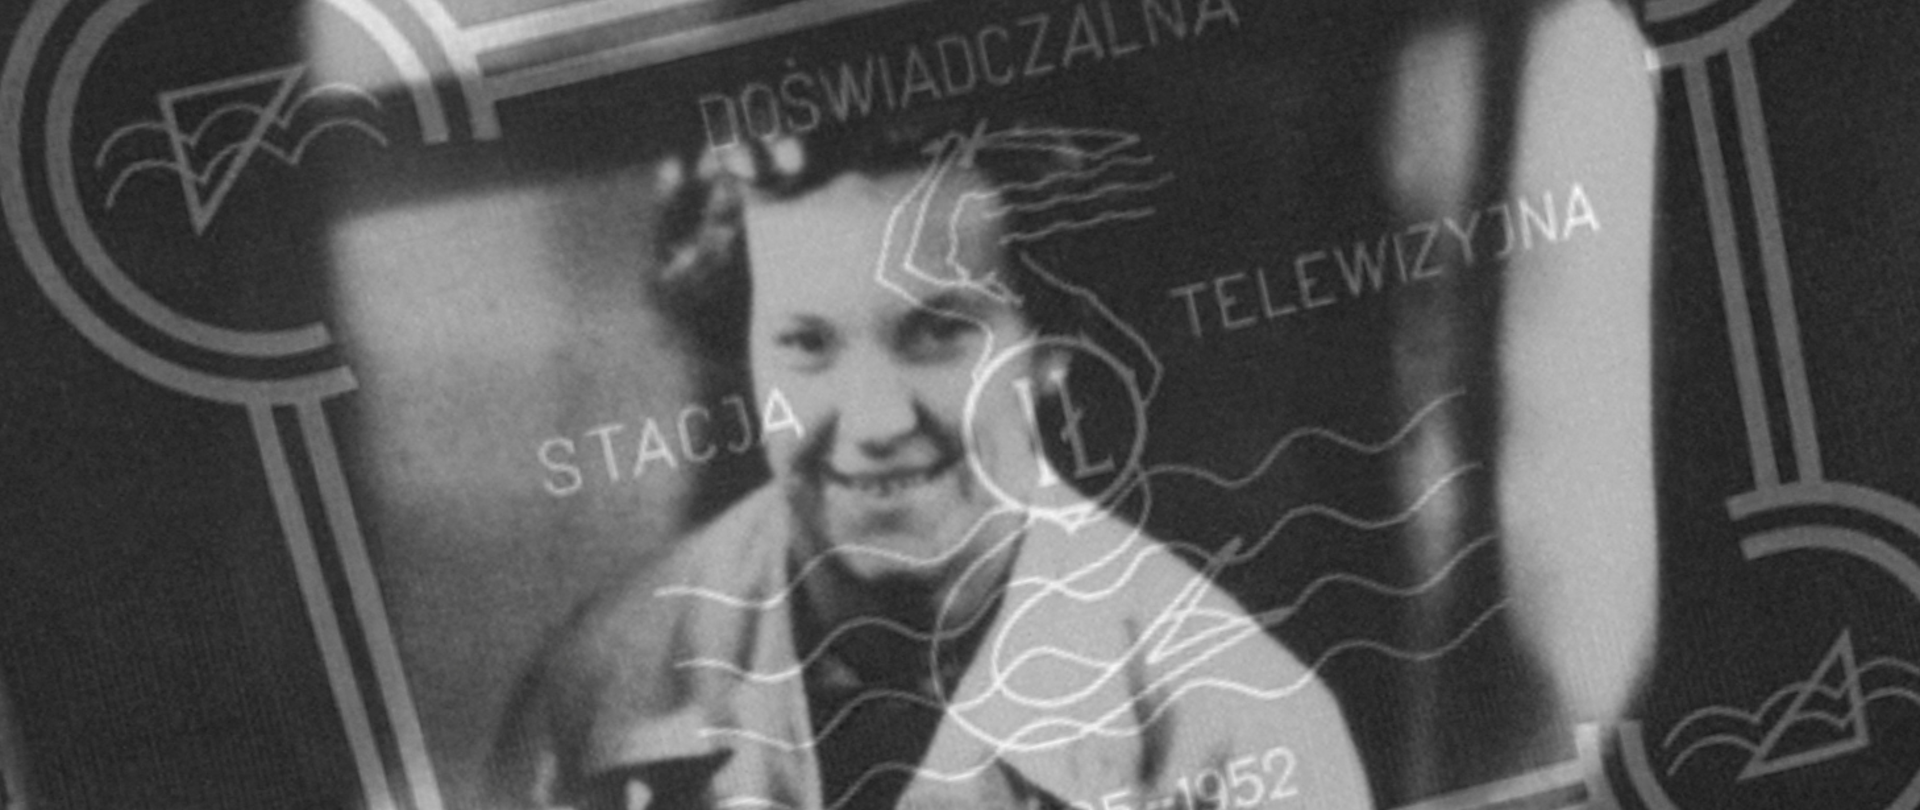 Ilustracja przedstawia zdjęcie ekranu telewizyjnego, na którym widoczna jest twarz Wandy Trzebuni. Na jego tle półprzezroczysta tablica sygnału wywoławczego Doświadczalnej Stacji Telewizyjnej Instytutu Łączności.